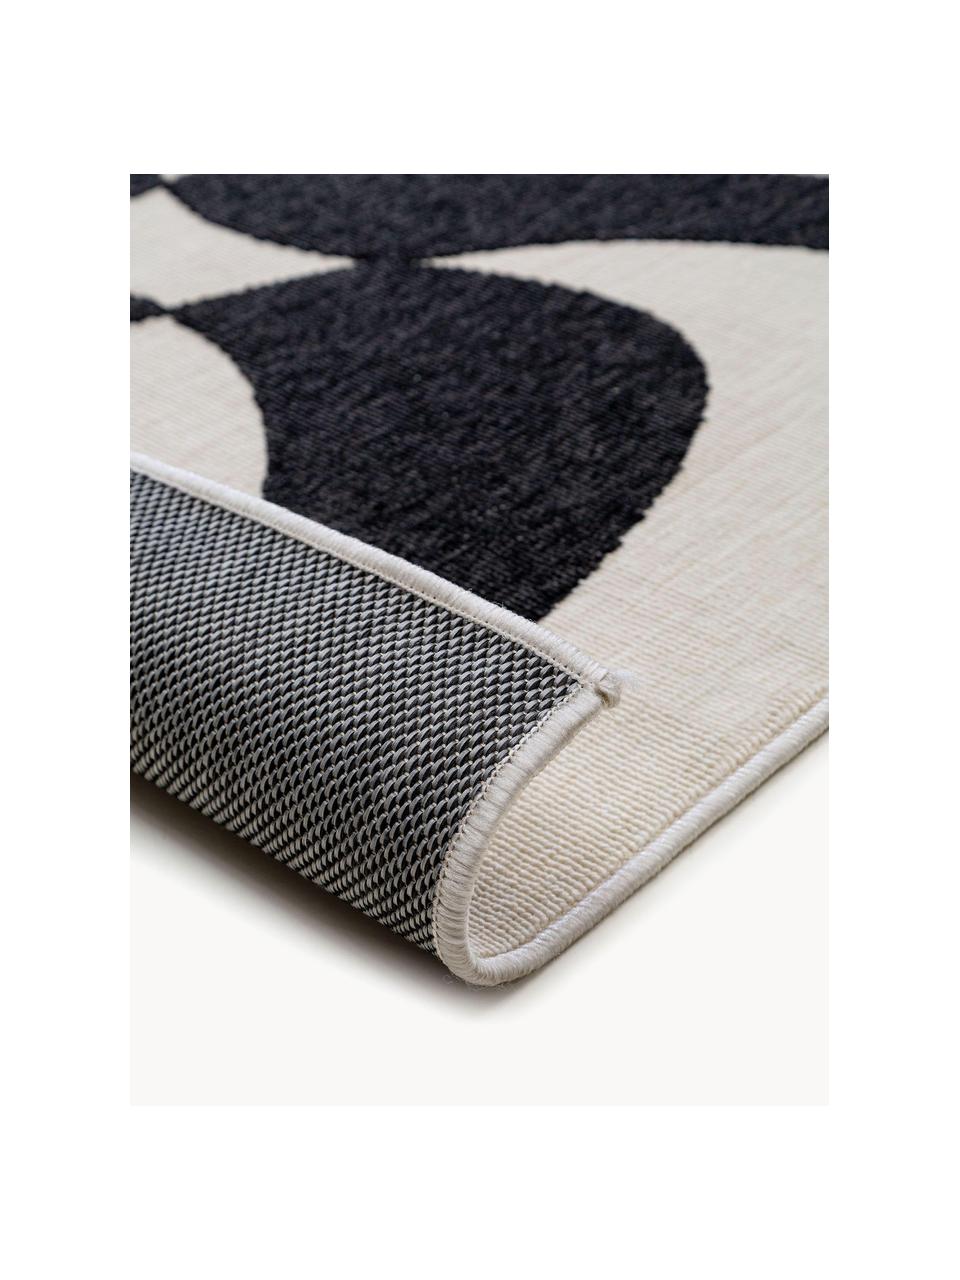 Interiérový/exteriérový koberec Taro, 100 % polypropylen, Černá, tlumeně bílá, Š 80 cm, D 150 cm (velikost XS)